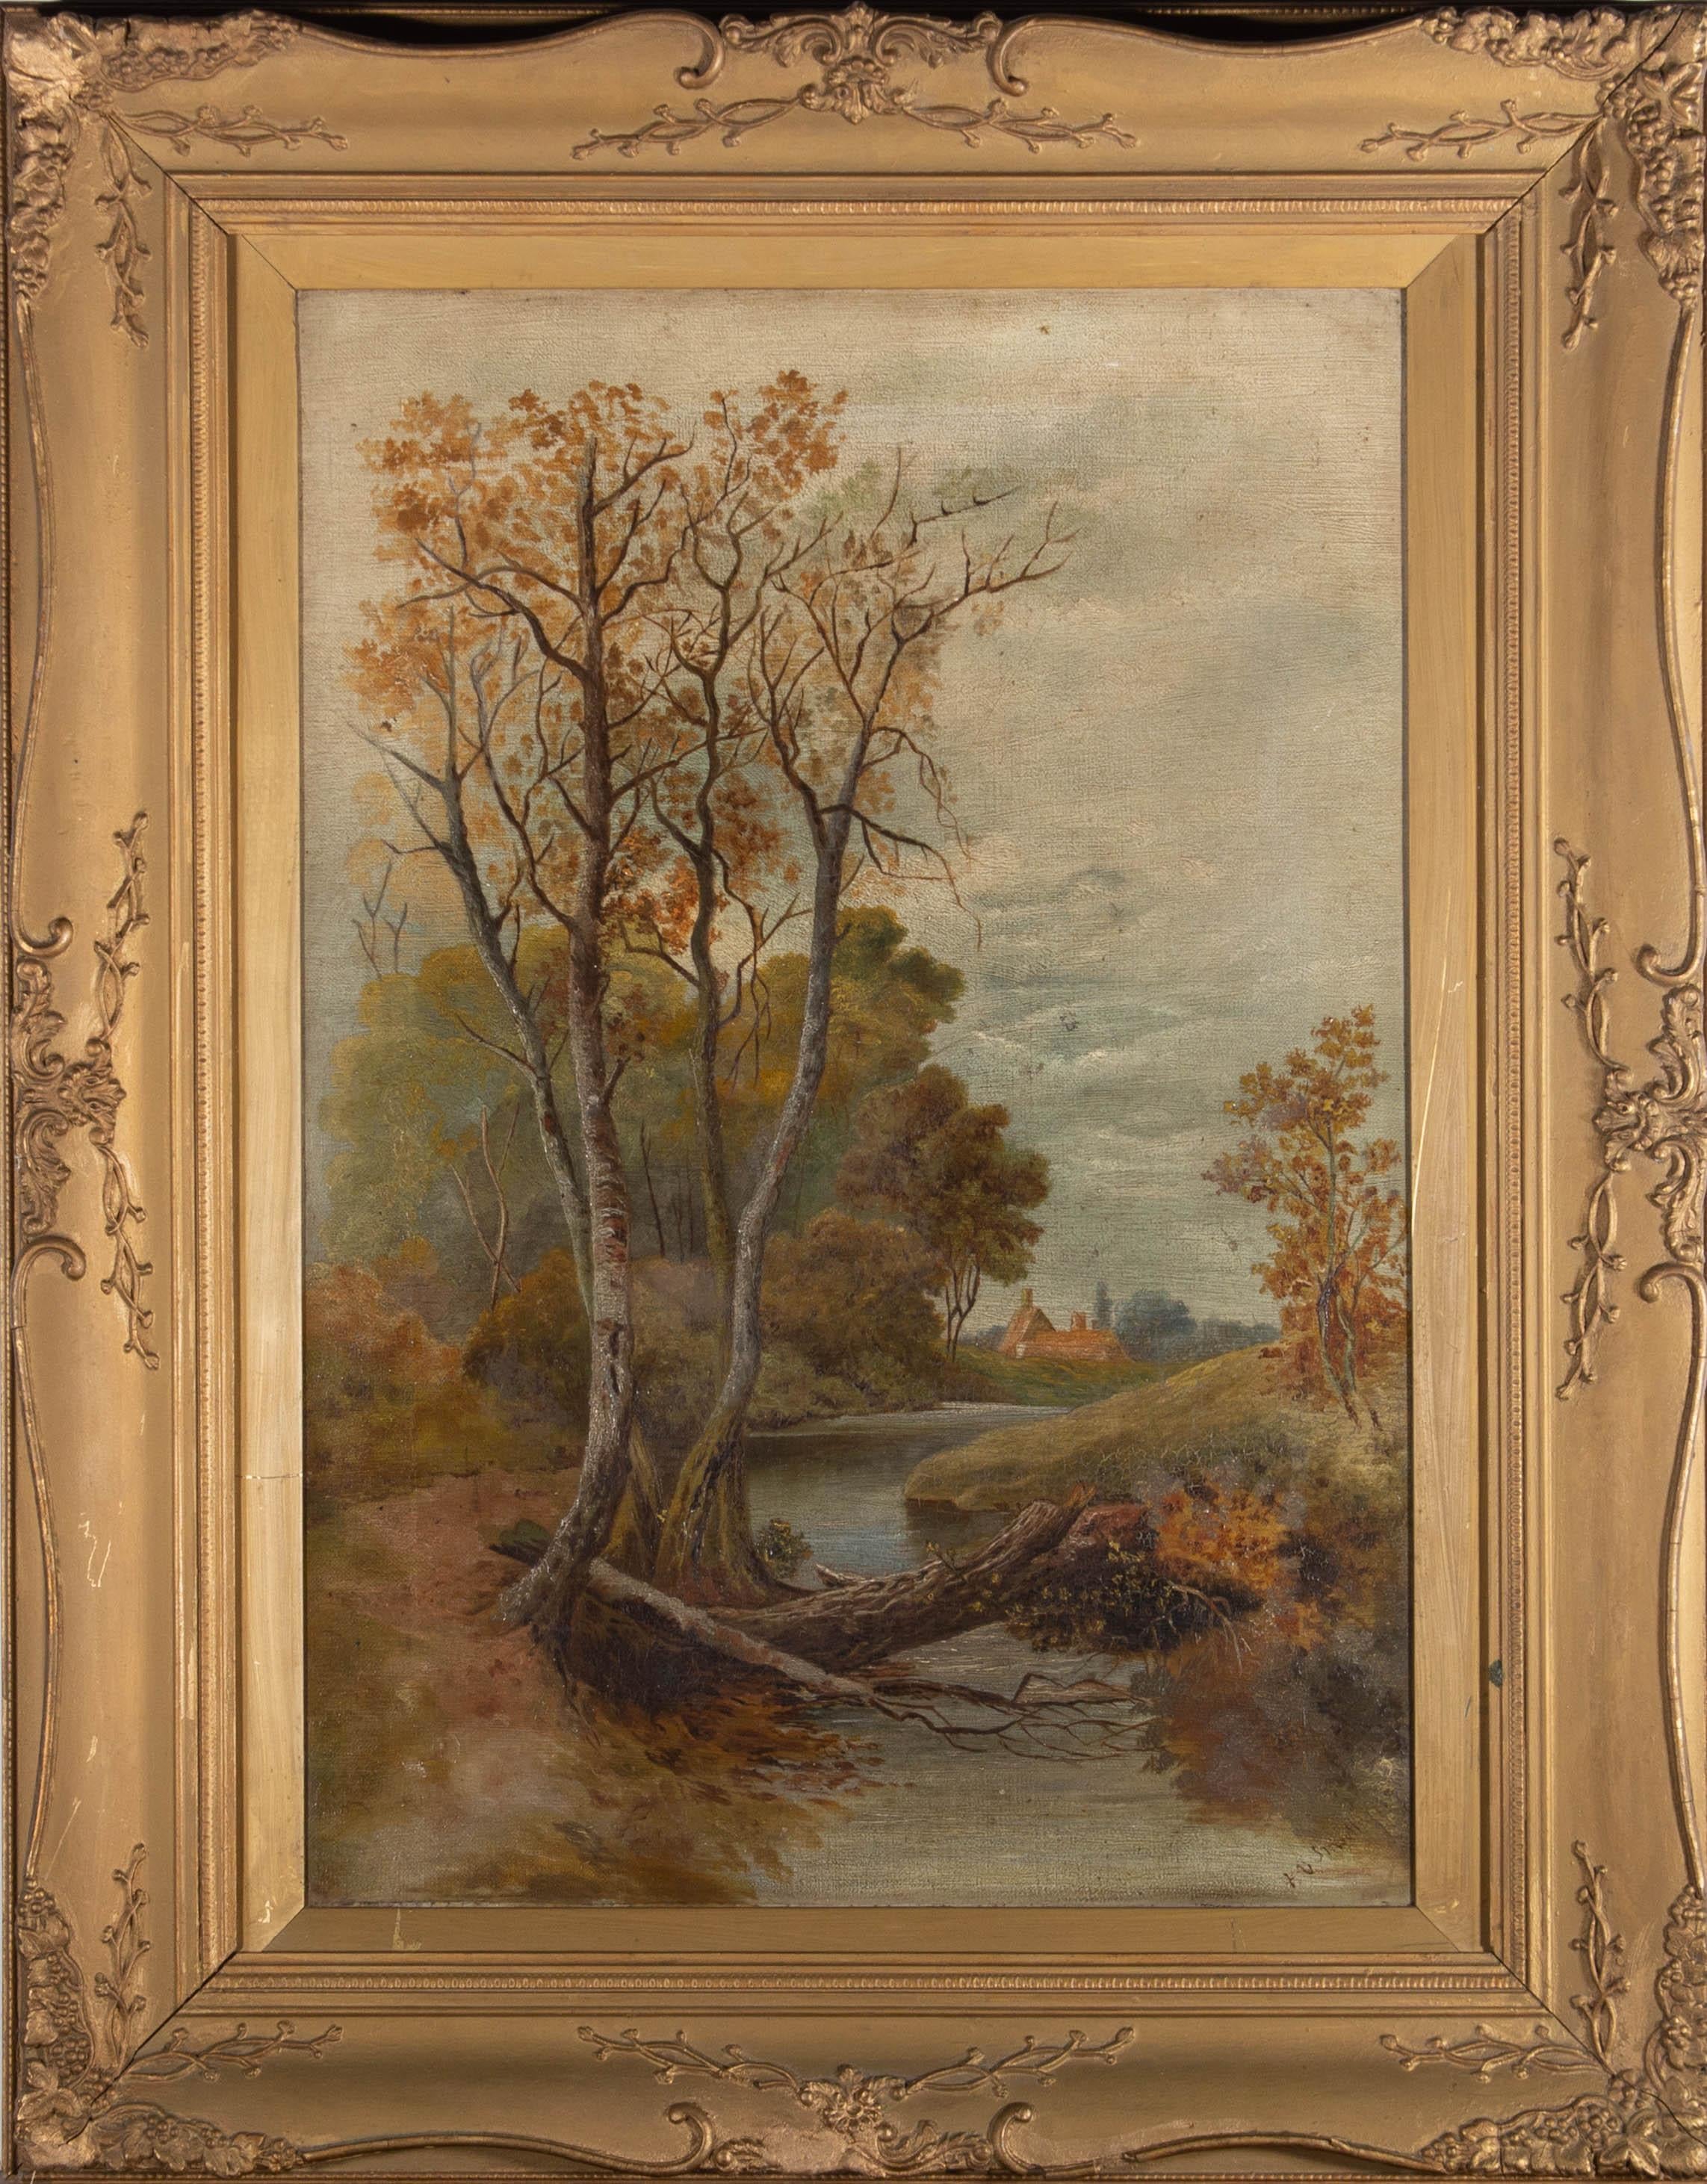 Ein charmantes Ölgemälde, das eine ländliche Landschaftsszene mit einem Fluss und einer Hütte in der Ferne zeigt. Undeutlich signiert und in der rechten unteren Ecke datiert "09". Präsentiert in einem vergoldeten Slip und in einem verzierten,